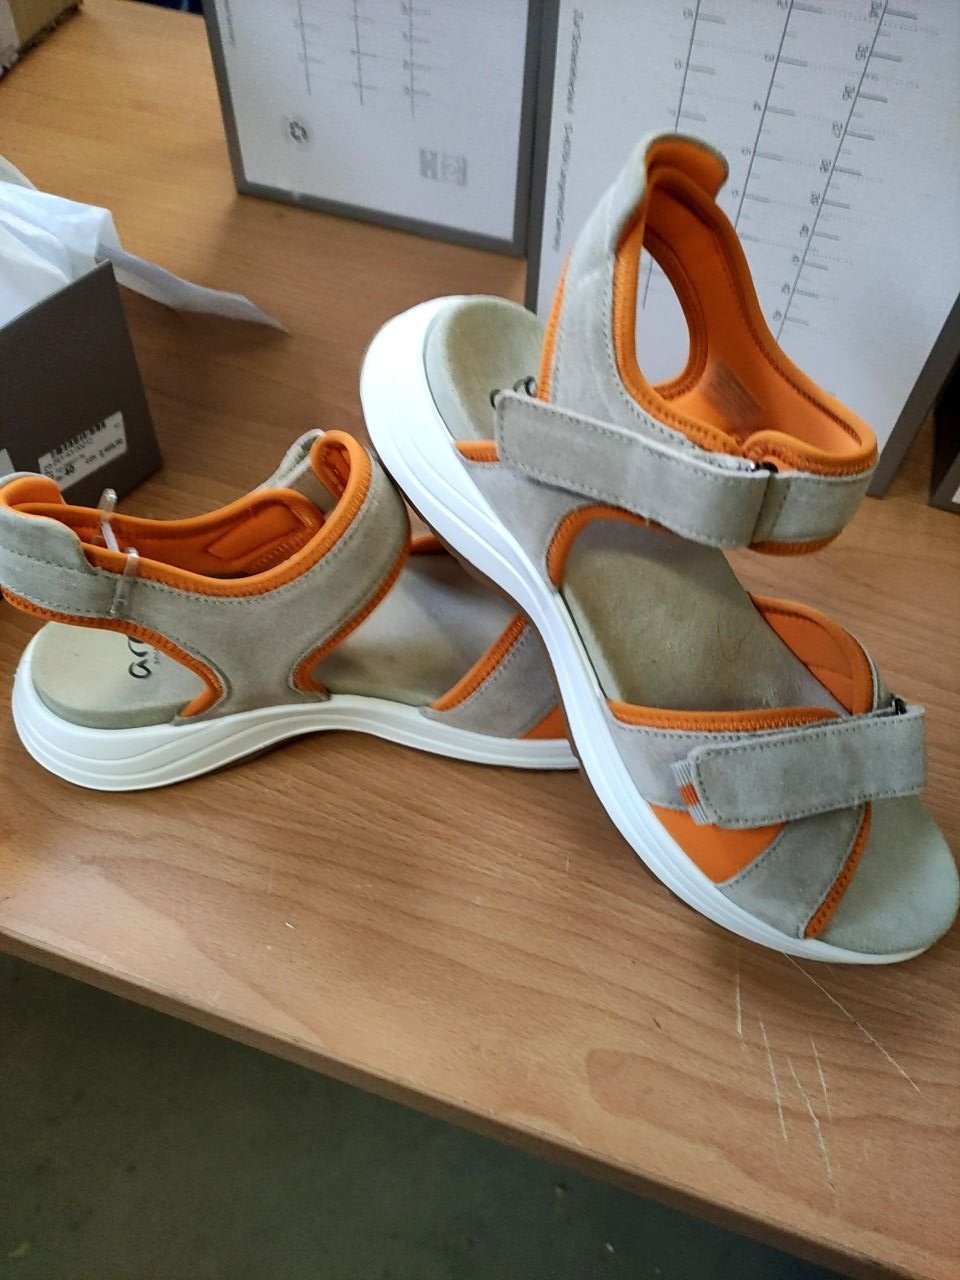 Sportovní obuv pro ženy - lehké kožené sandále Ara vel. 40